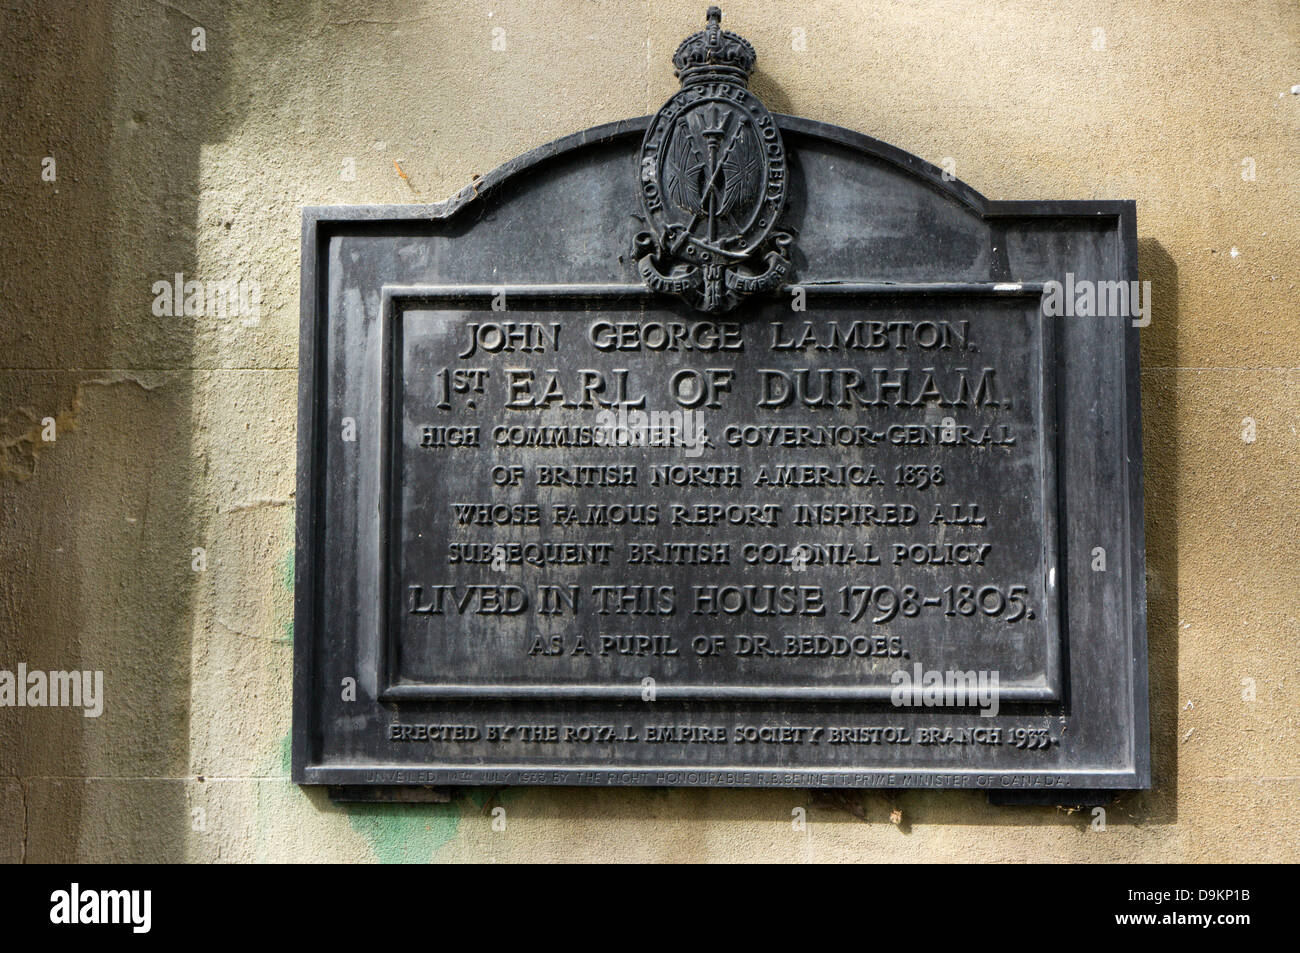 Eine Gedenktafel in Rodney Place, Bristol, Mark ein Haus von der Earl of Durham, John George Lambton bewohnt. Stockfoto